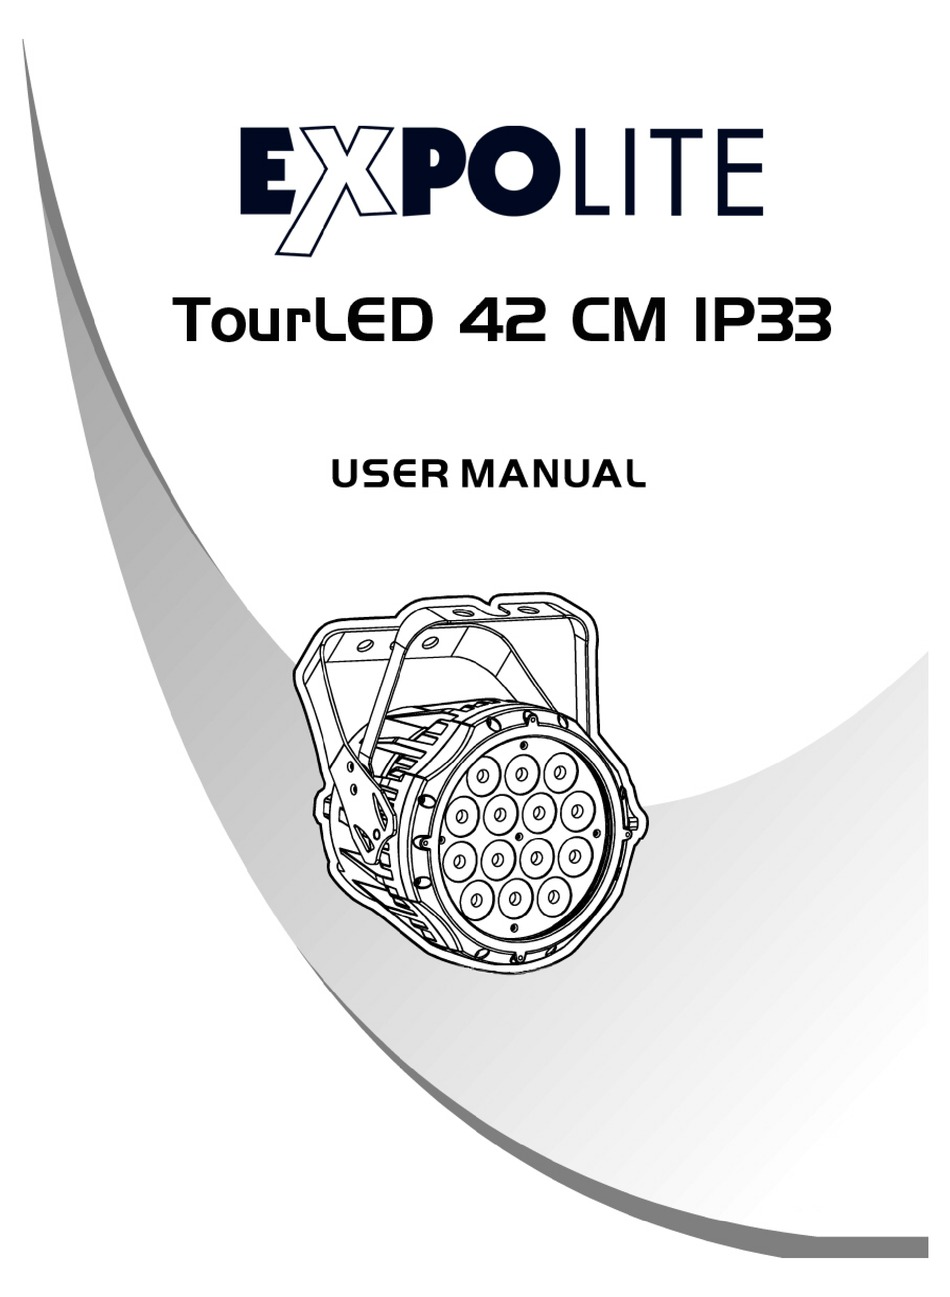 expolite tour led 42 manual